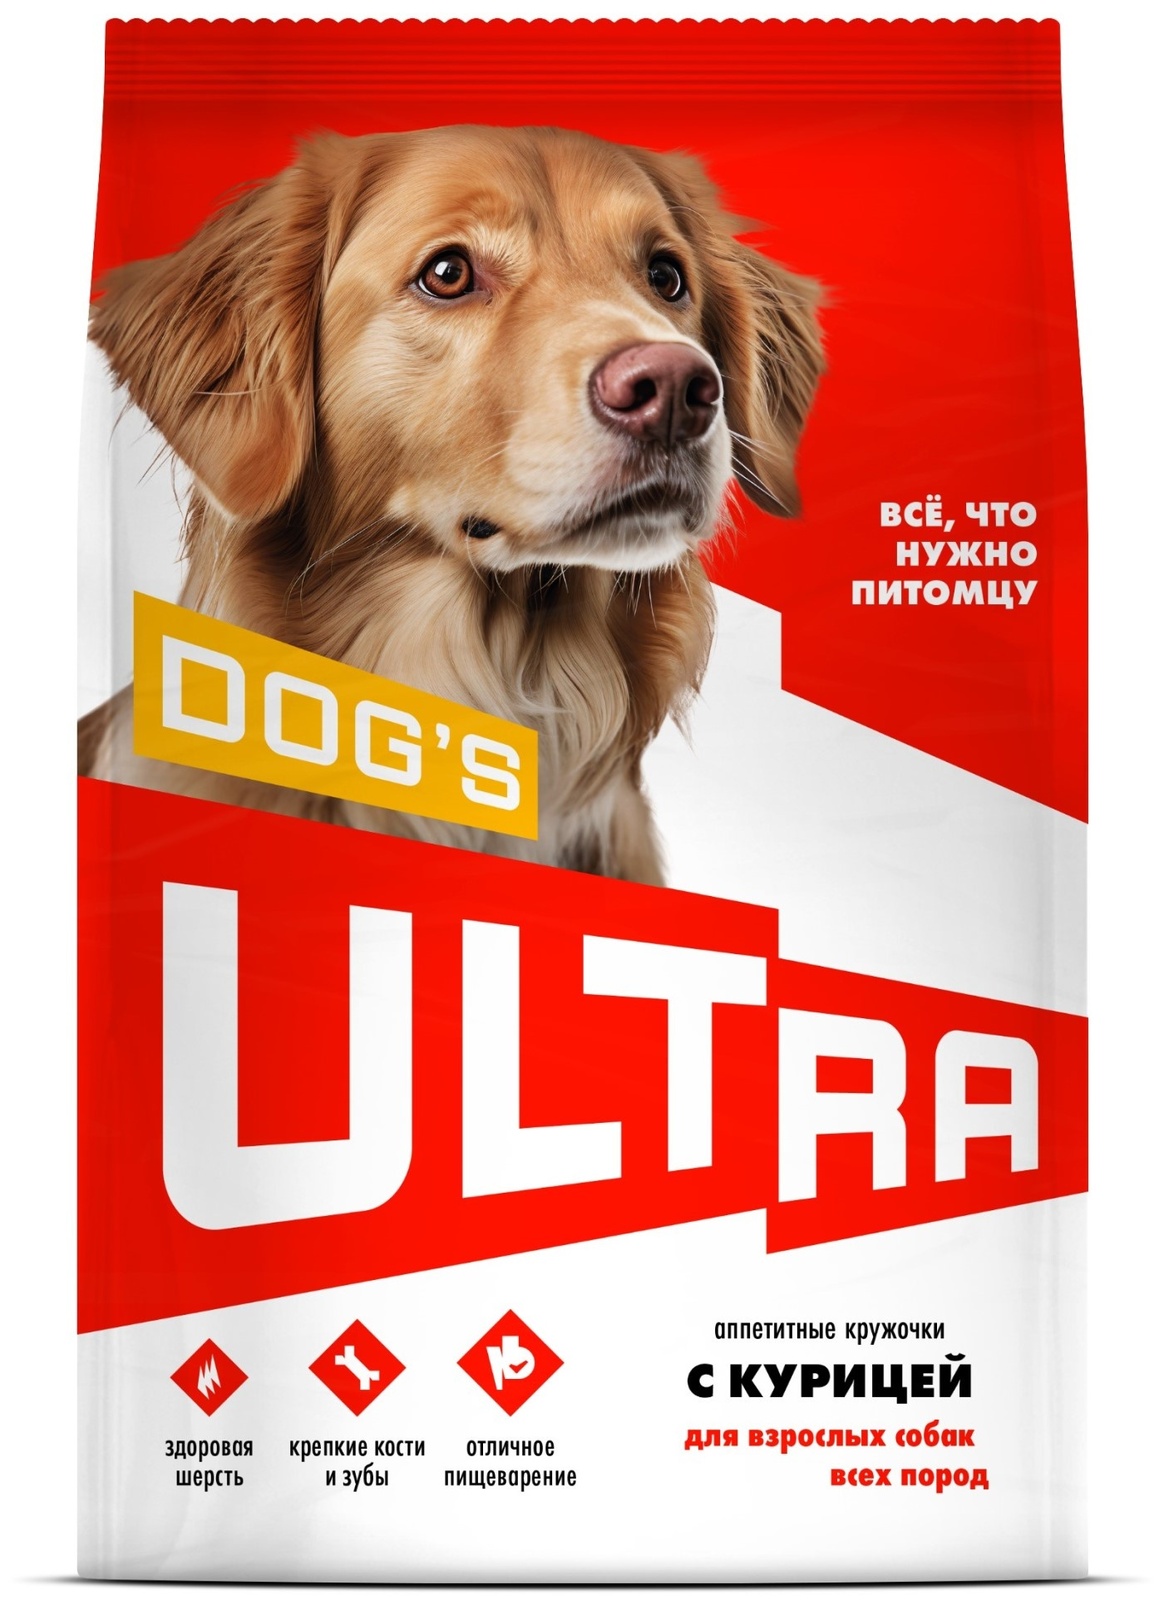 ULTRA ULTRA аппетитные кружочки с курицей для взрослых собак всех пород (600 г) ultra ultra аппетитные кружочки 3 вида мяса для взрослых собак всех пород 600 г